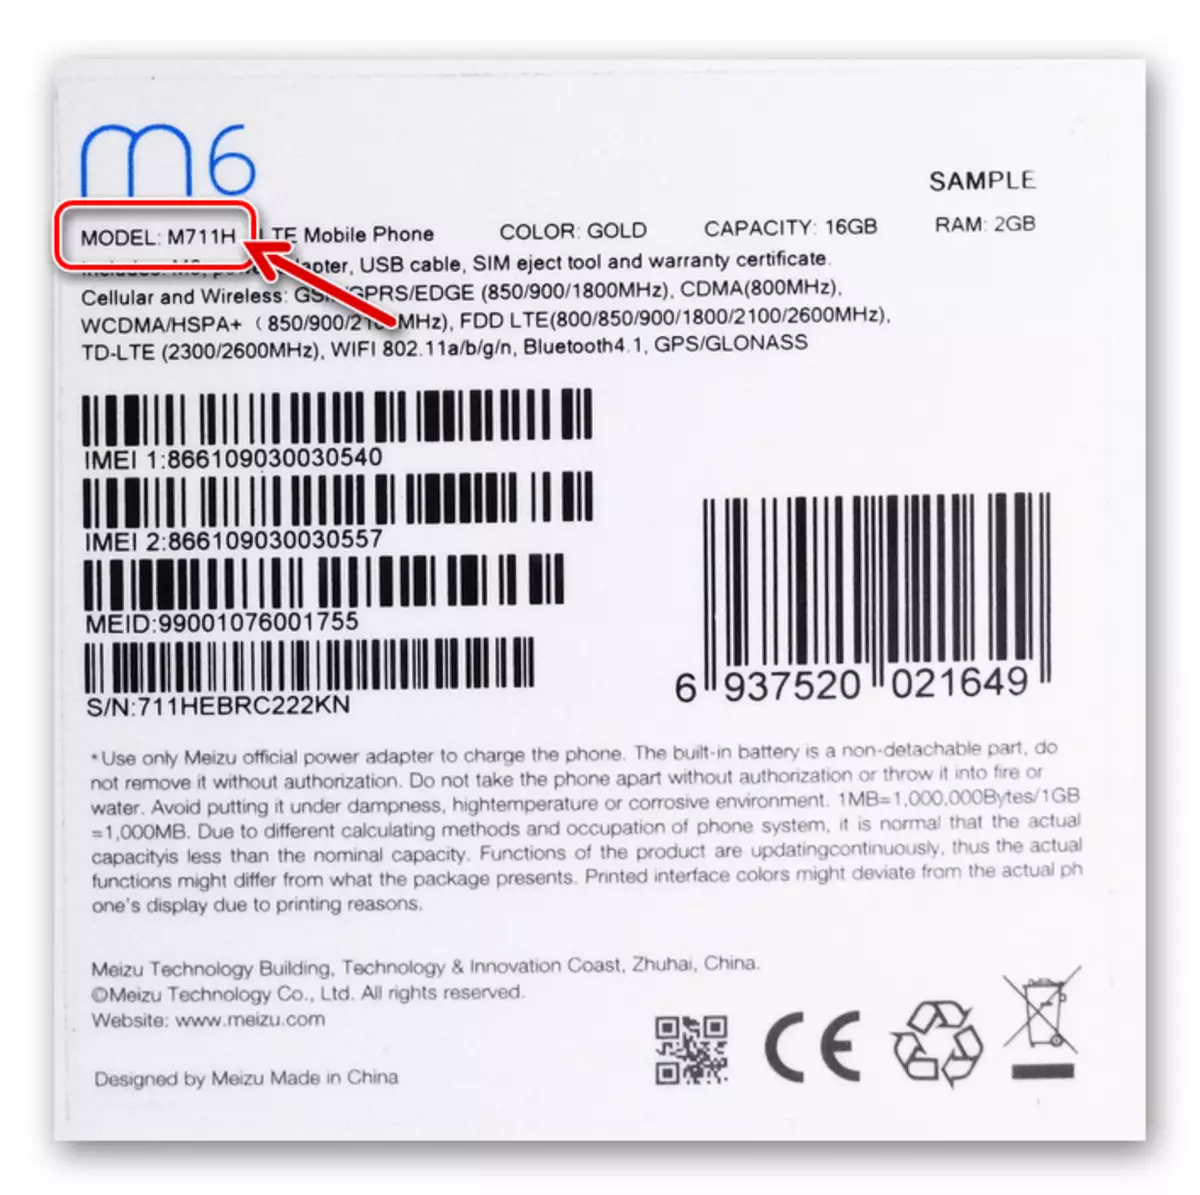 MEIZU M6 Modificatie van de smartphone op de verpakking van het apparaat